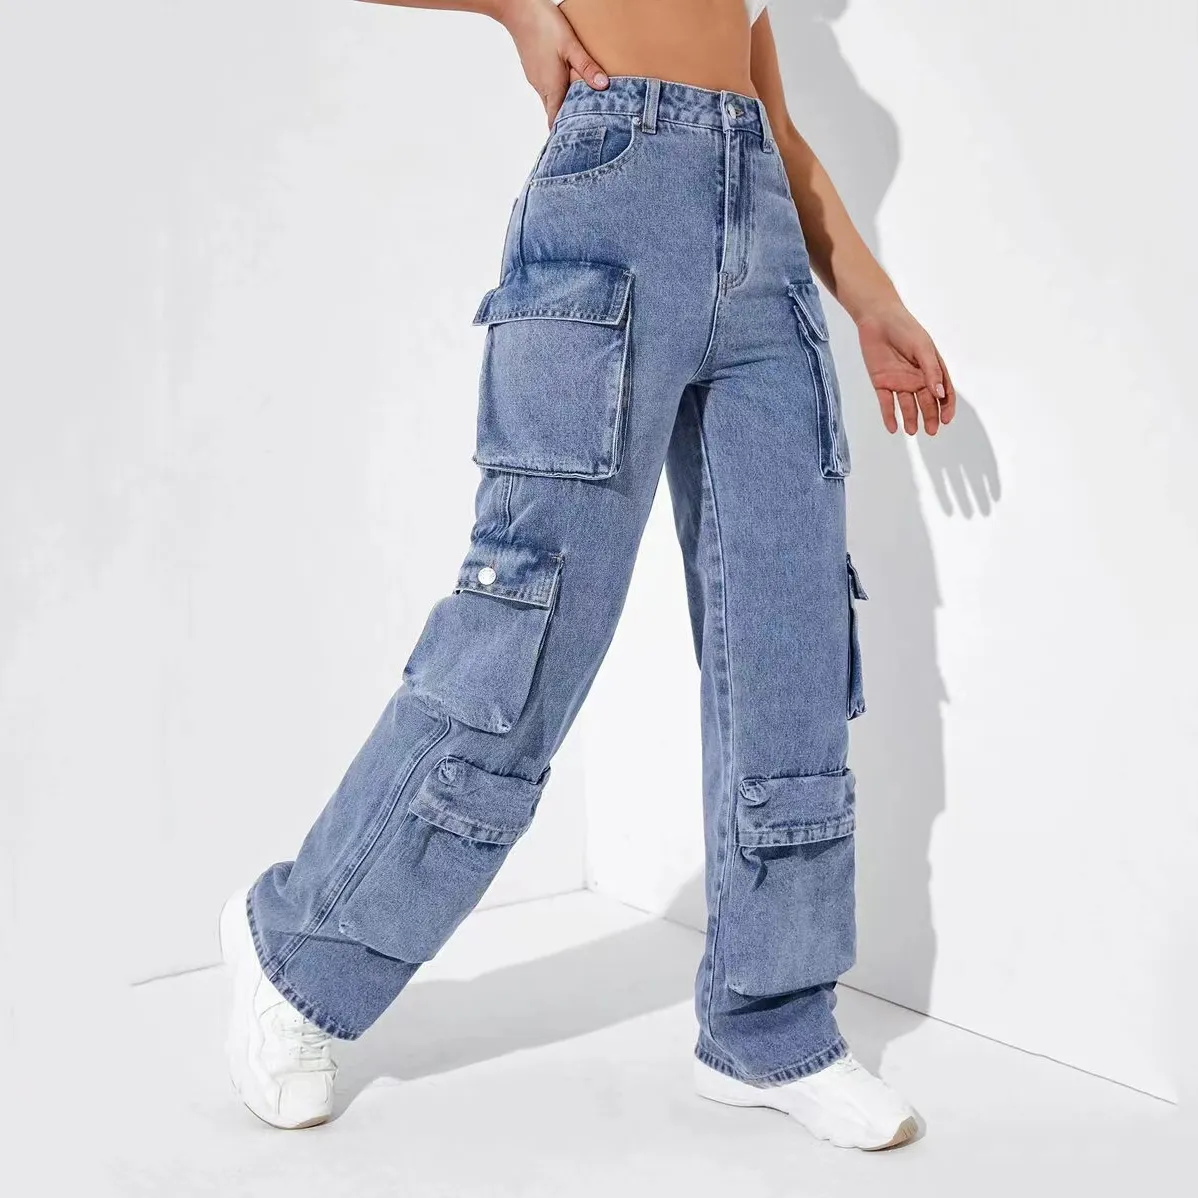 Designer Jeans femmes jeans cargo pantalon femmes jeans pantalons de cargaison lâches hautes zipper fly polyester denim coton punk tenue quotidienne spning s-2xl goth jeans femme